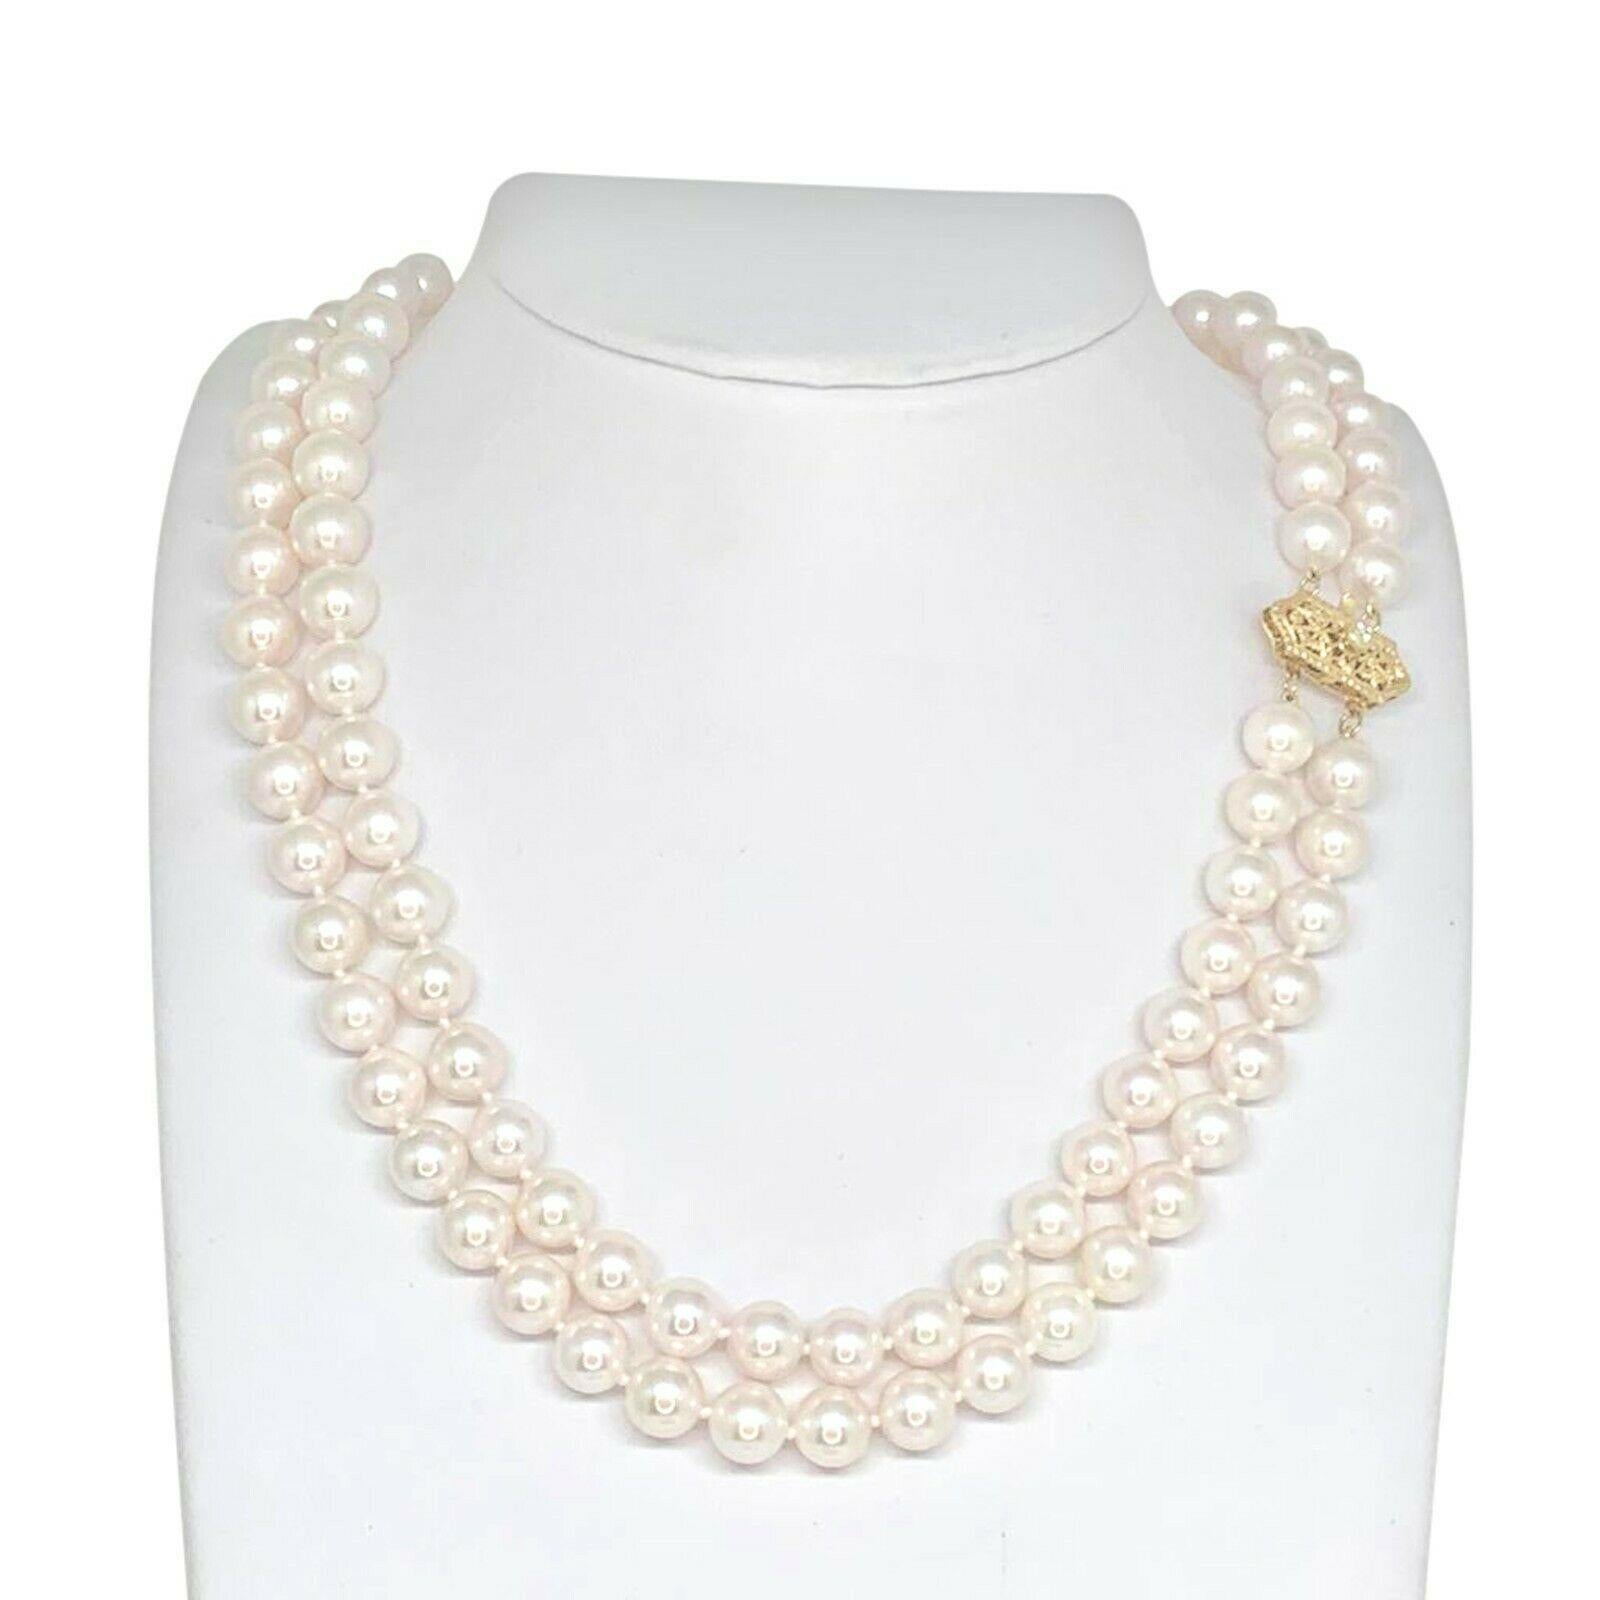 Collier de perles Akoya de qualité supérieure avec diamants, 8 mm, en or 14k, 2 brins, certifié 9 750 $ 010933

Il s'agit d'une pièce de joaillerie unique, glamour et faite sur mesure !

Rien ne dit mieux 